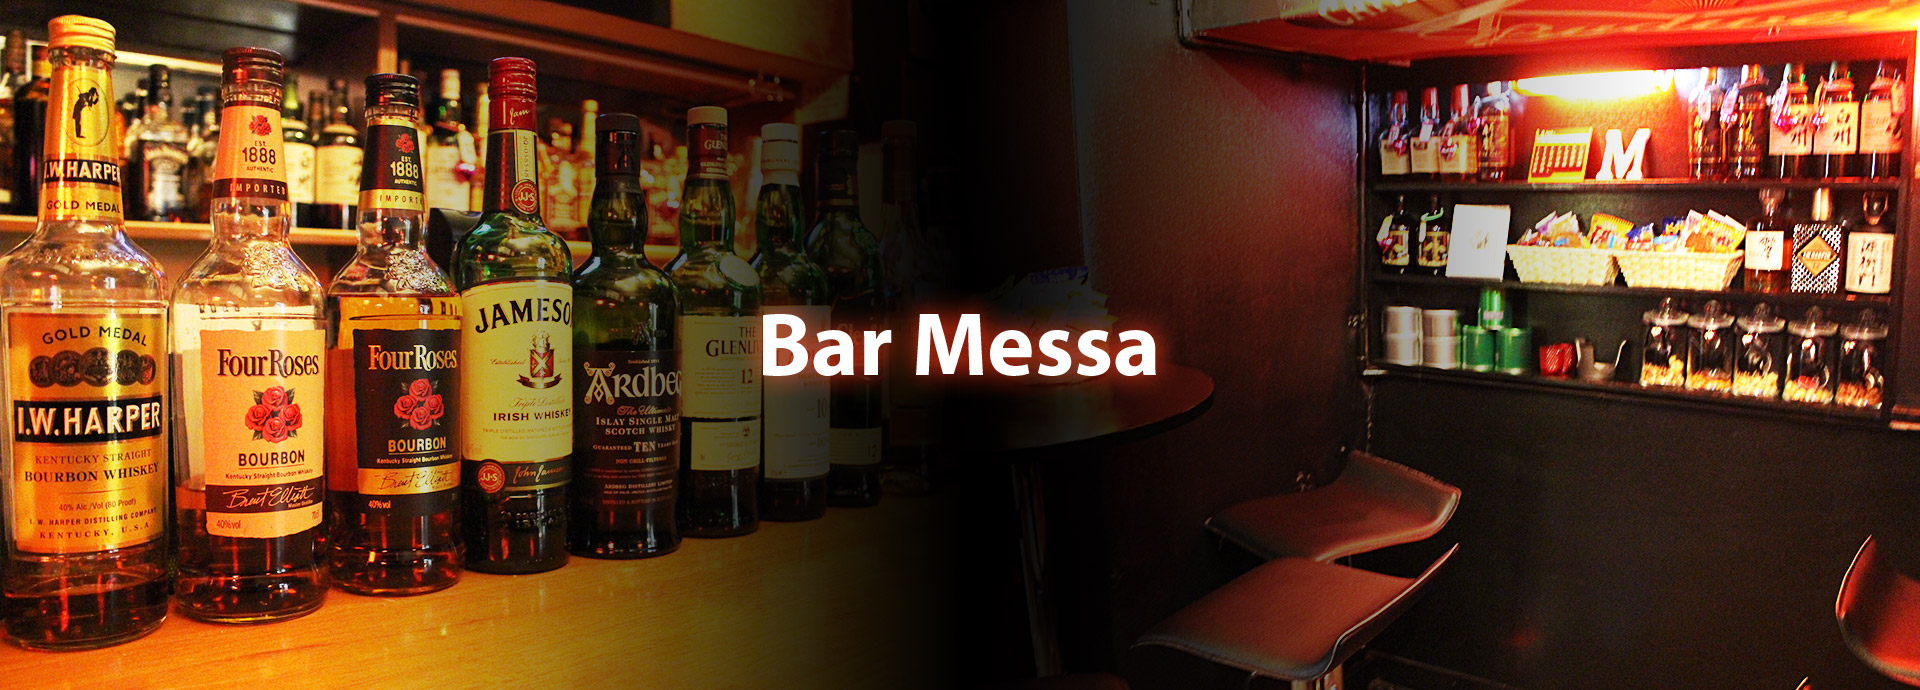 Bar messa(バールメッサ)